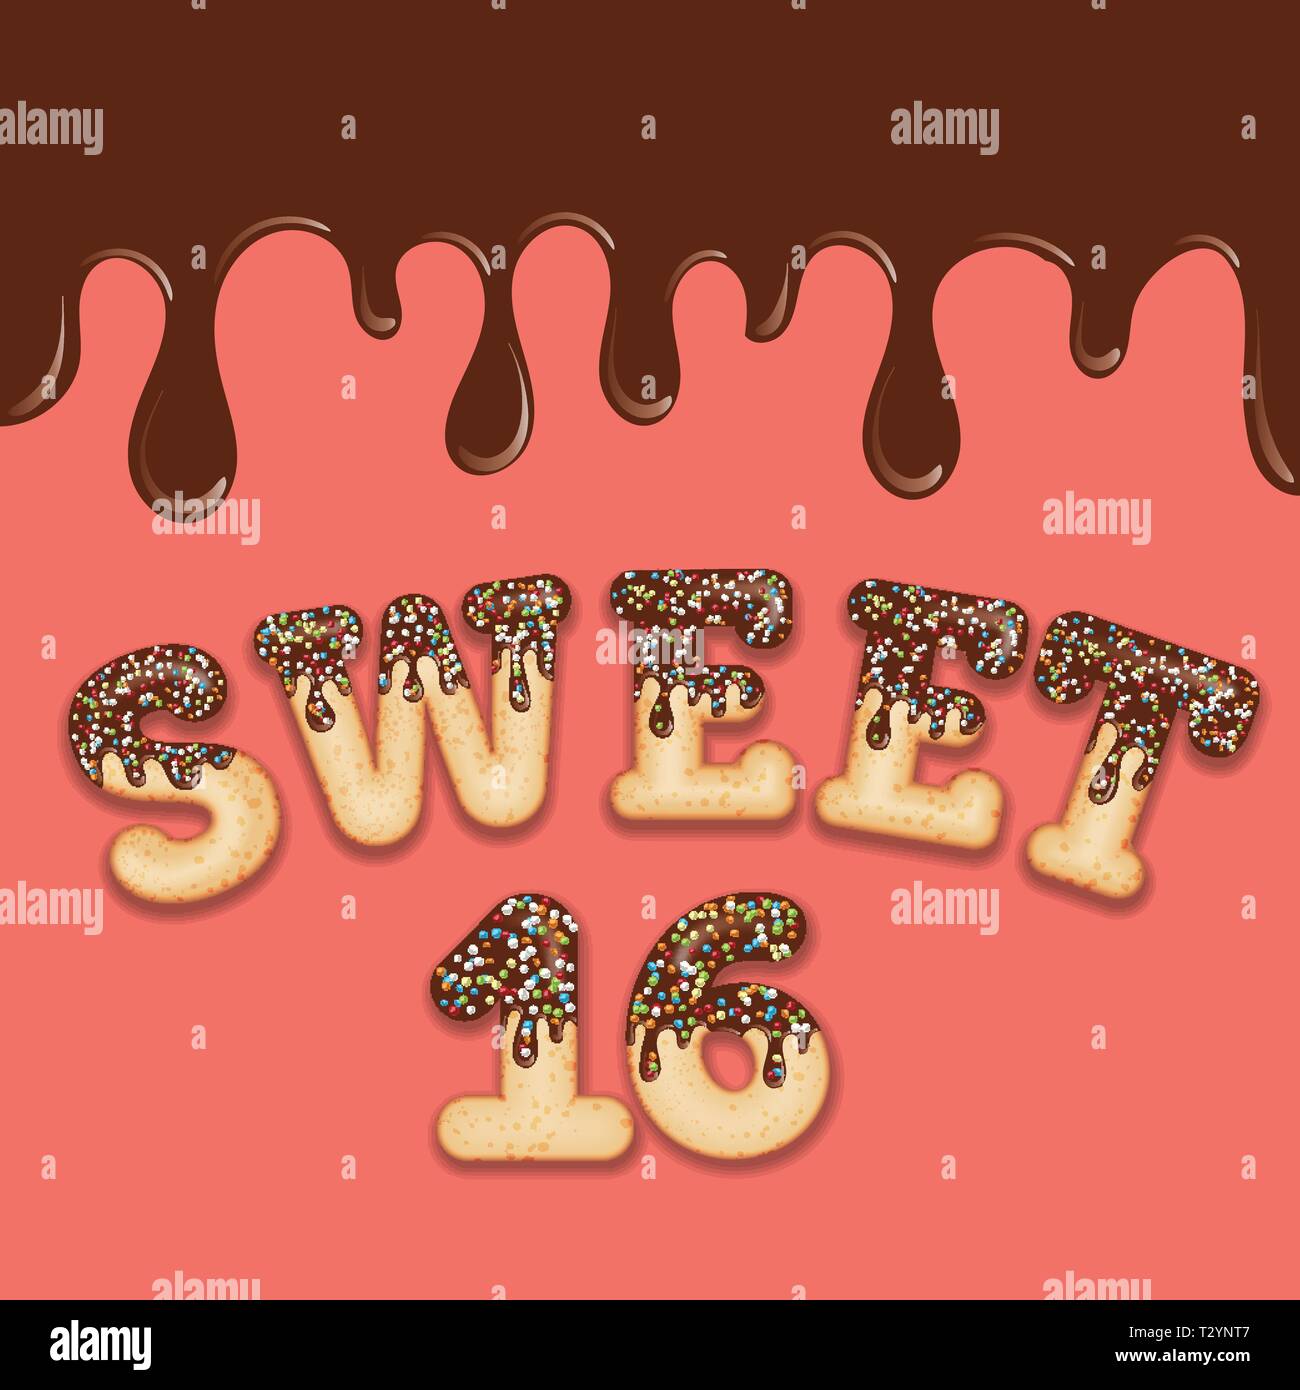 Verlockende Typografie. Vereisung Text. 'Sweet Sixteen' Geburtstag text glasiert mit Schokolade und Süßigkeiten. Donut Buchstaben. Vektor. Stock Vektor